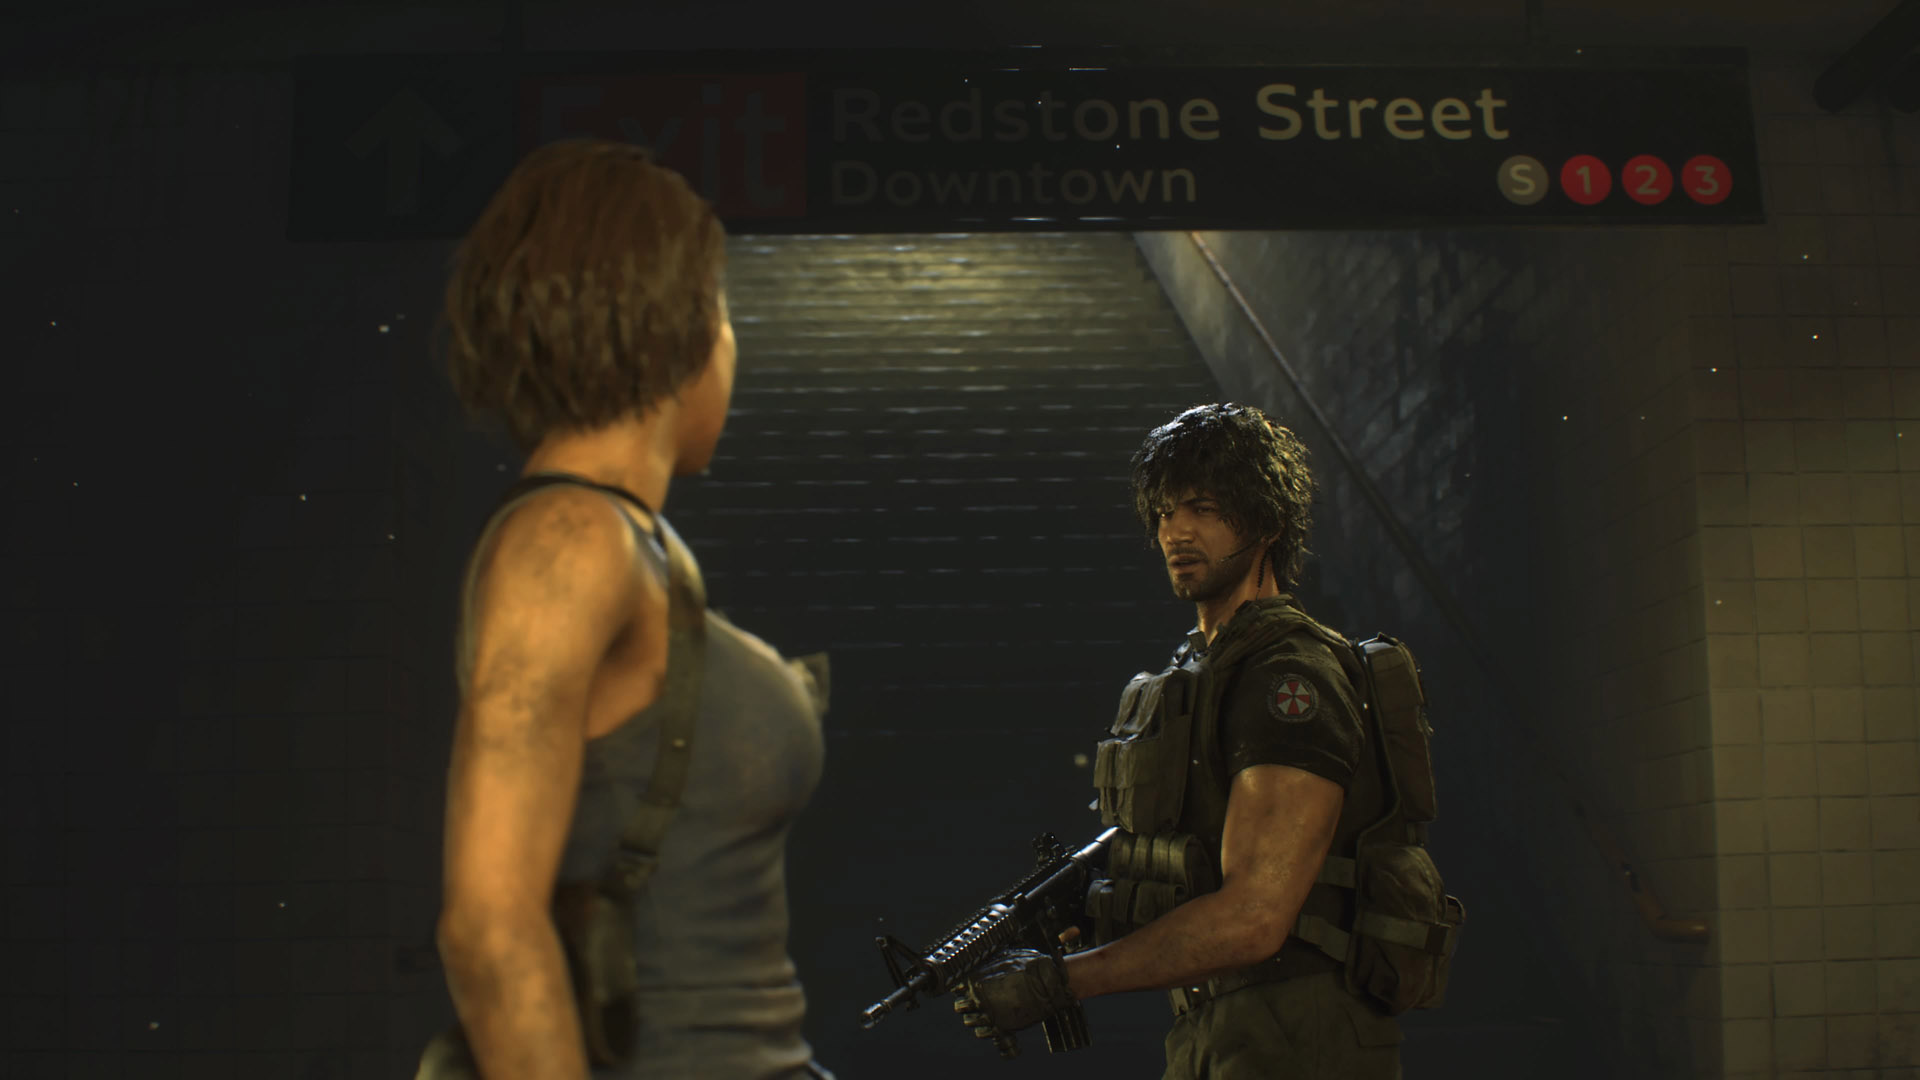 PS4 New - Resident Evil 3 Remake / Bio Hazard RE:3 (Korean version)